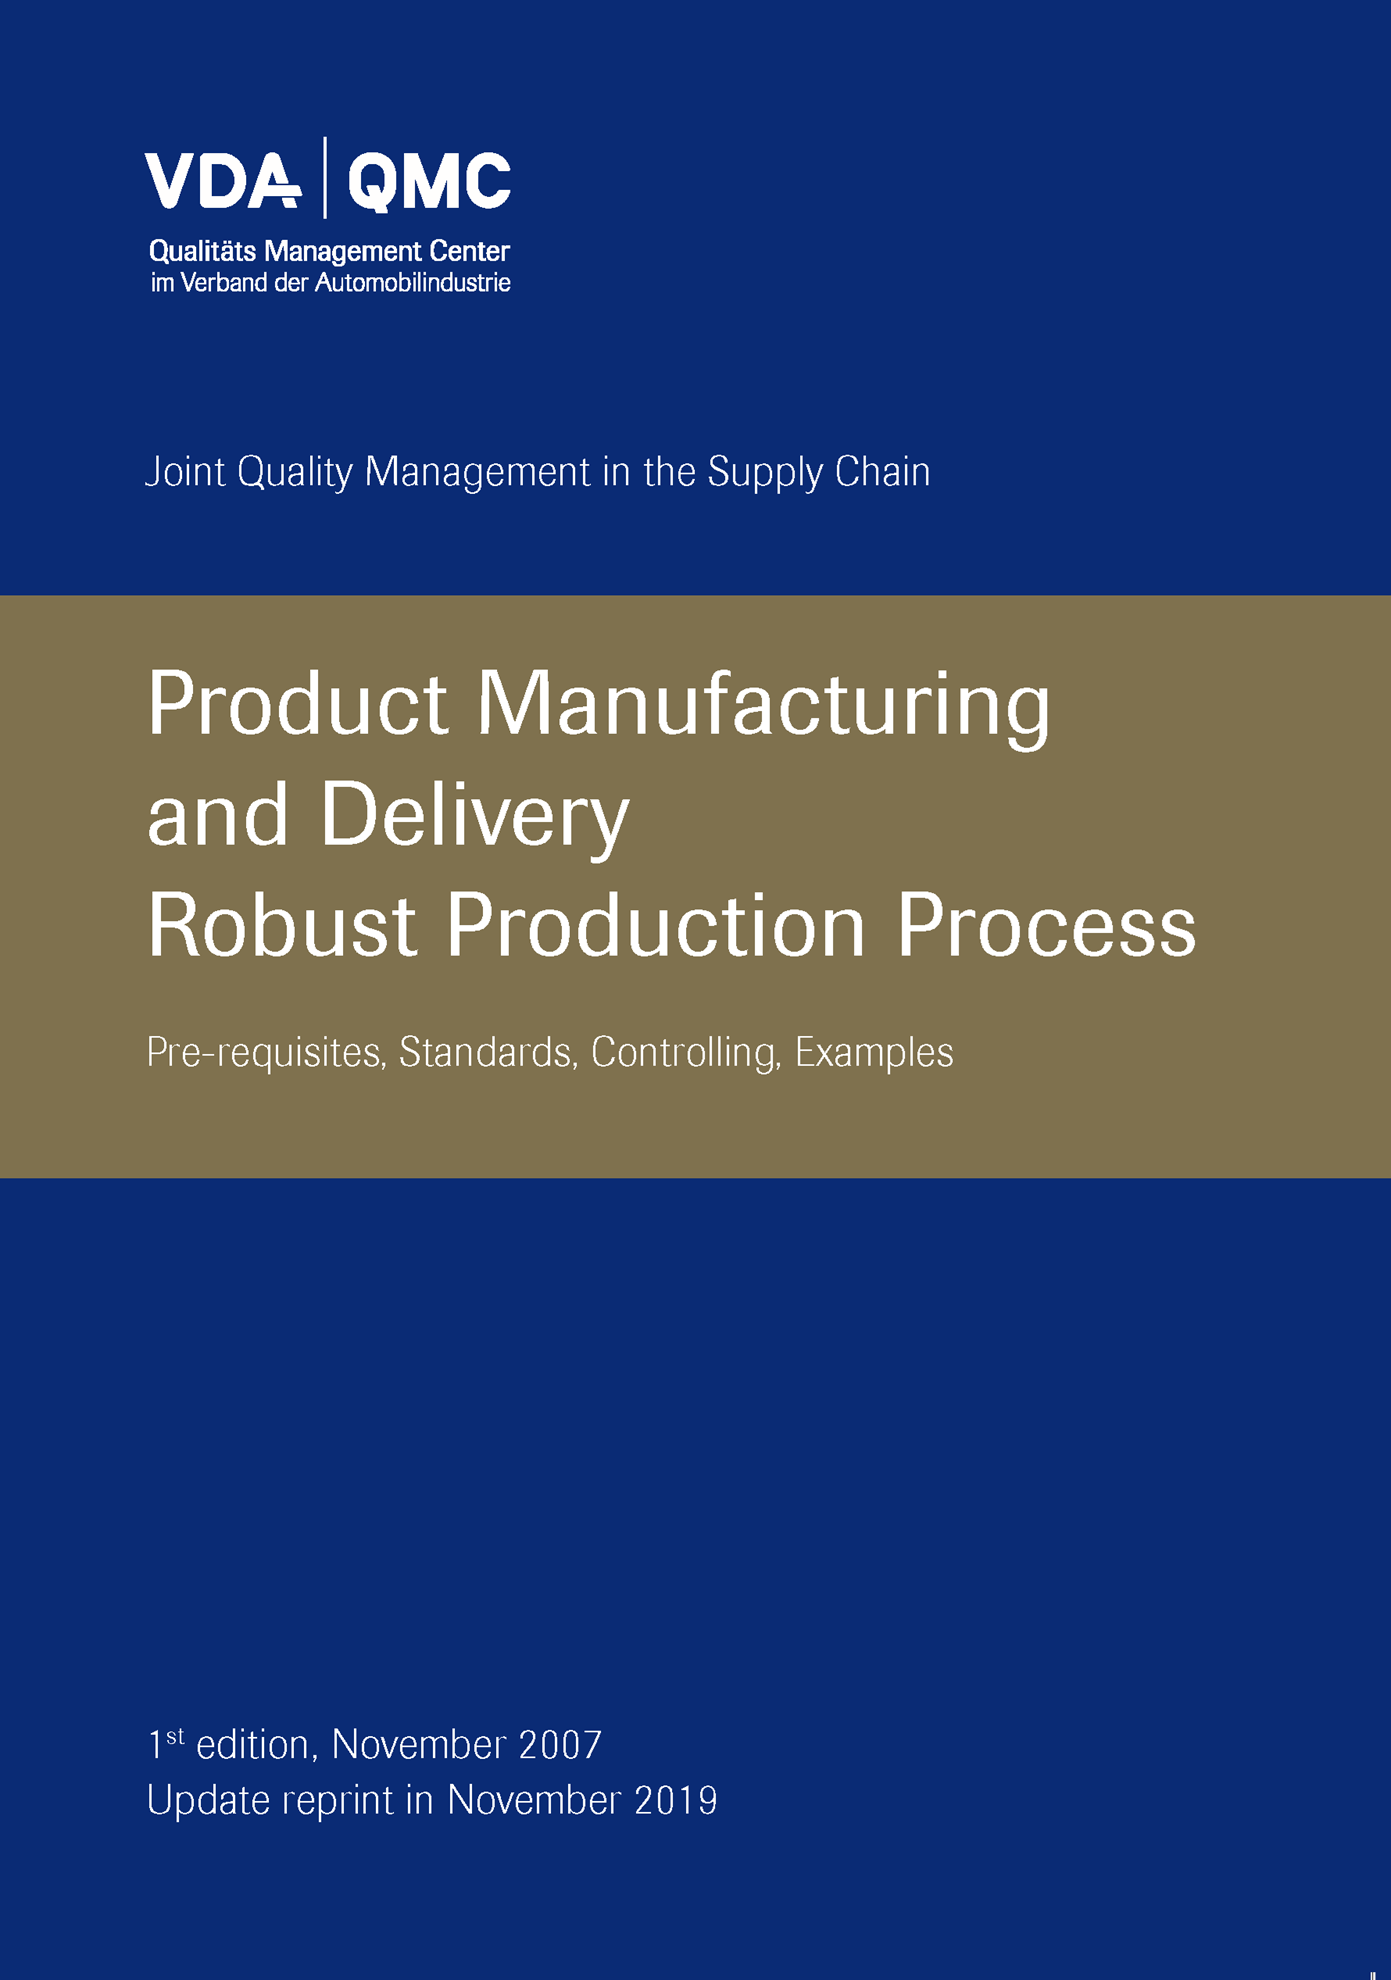 Bild von Robust Production Process